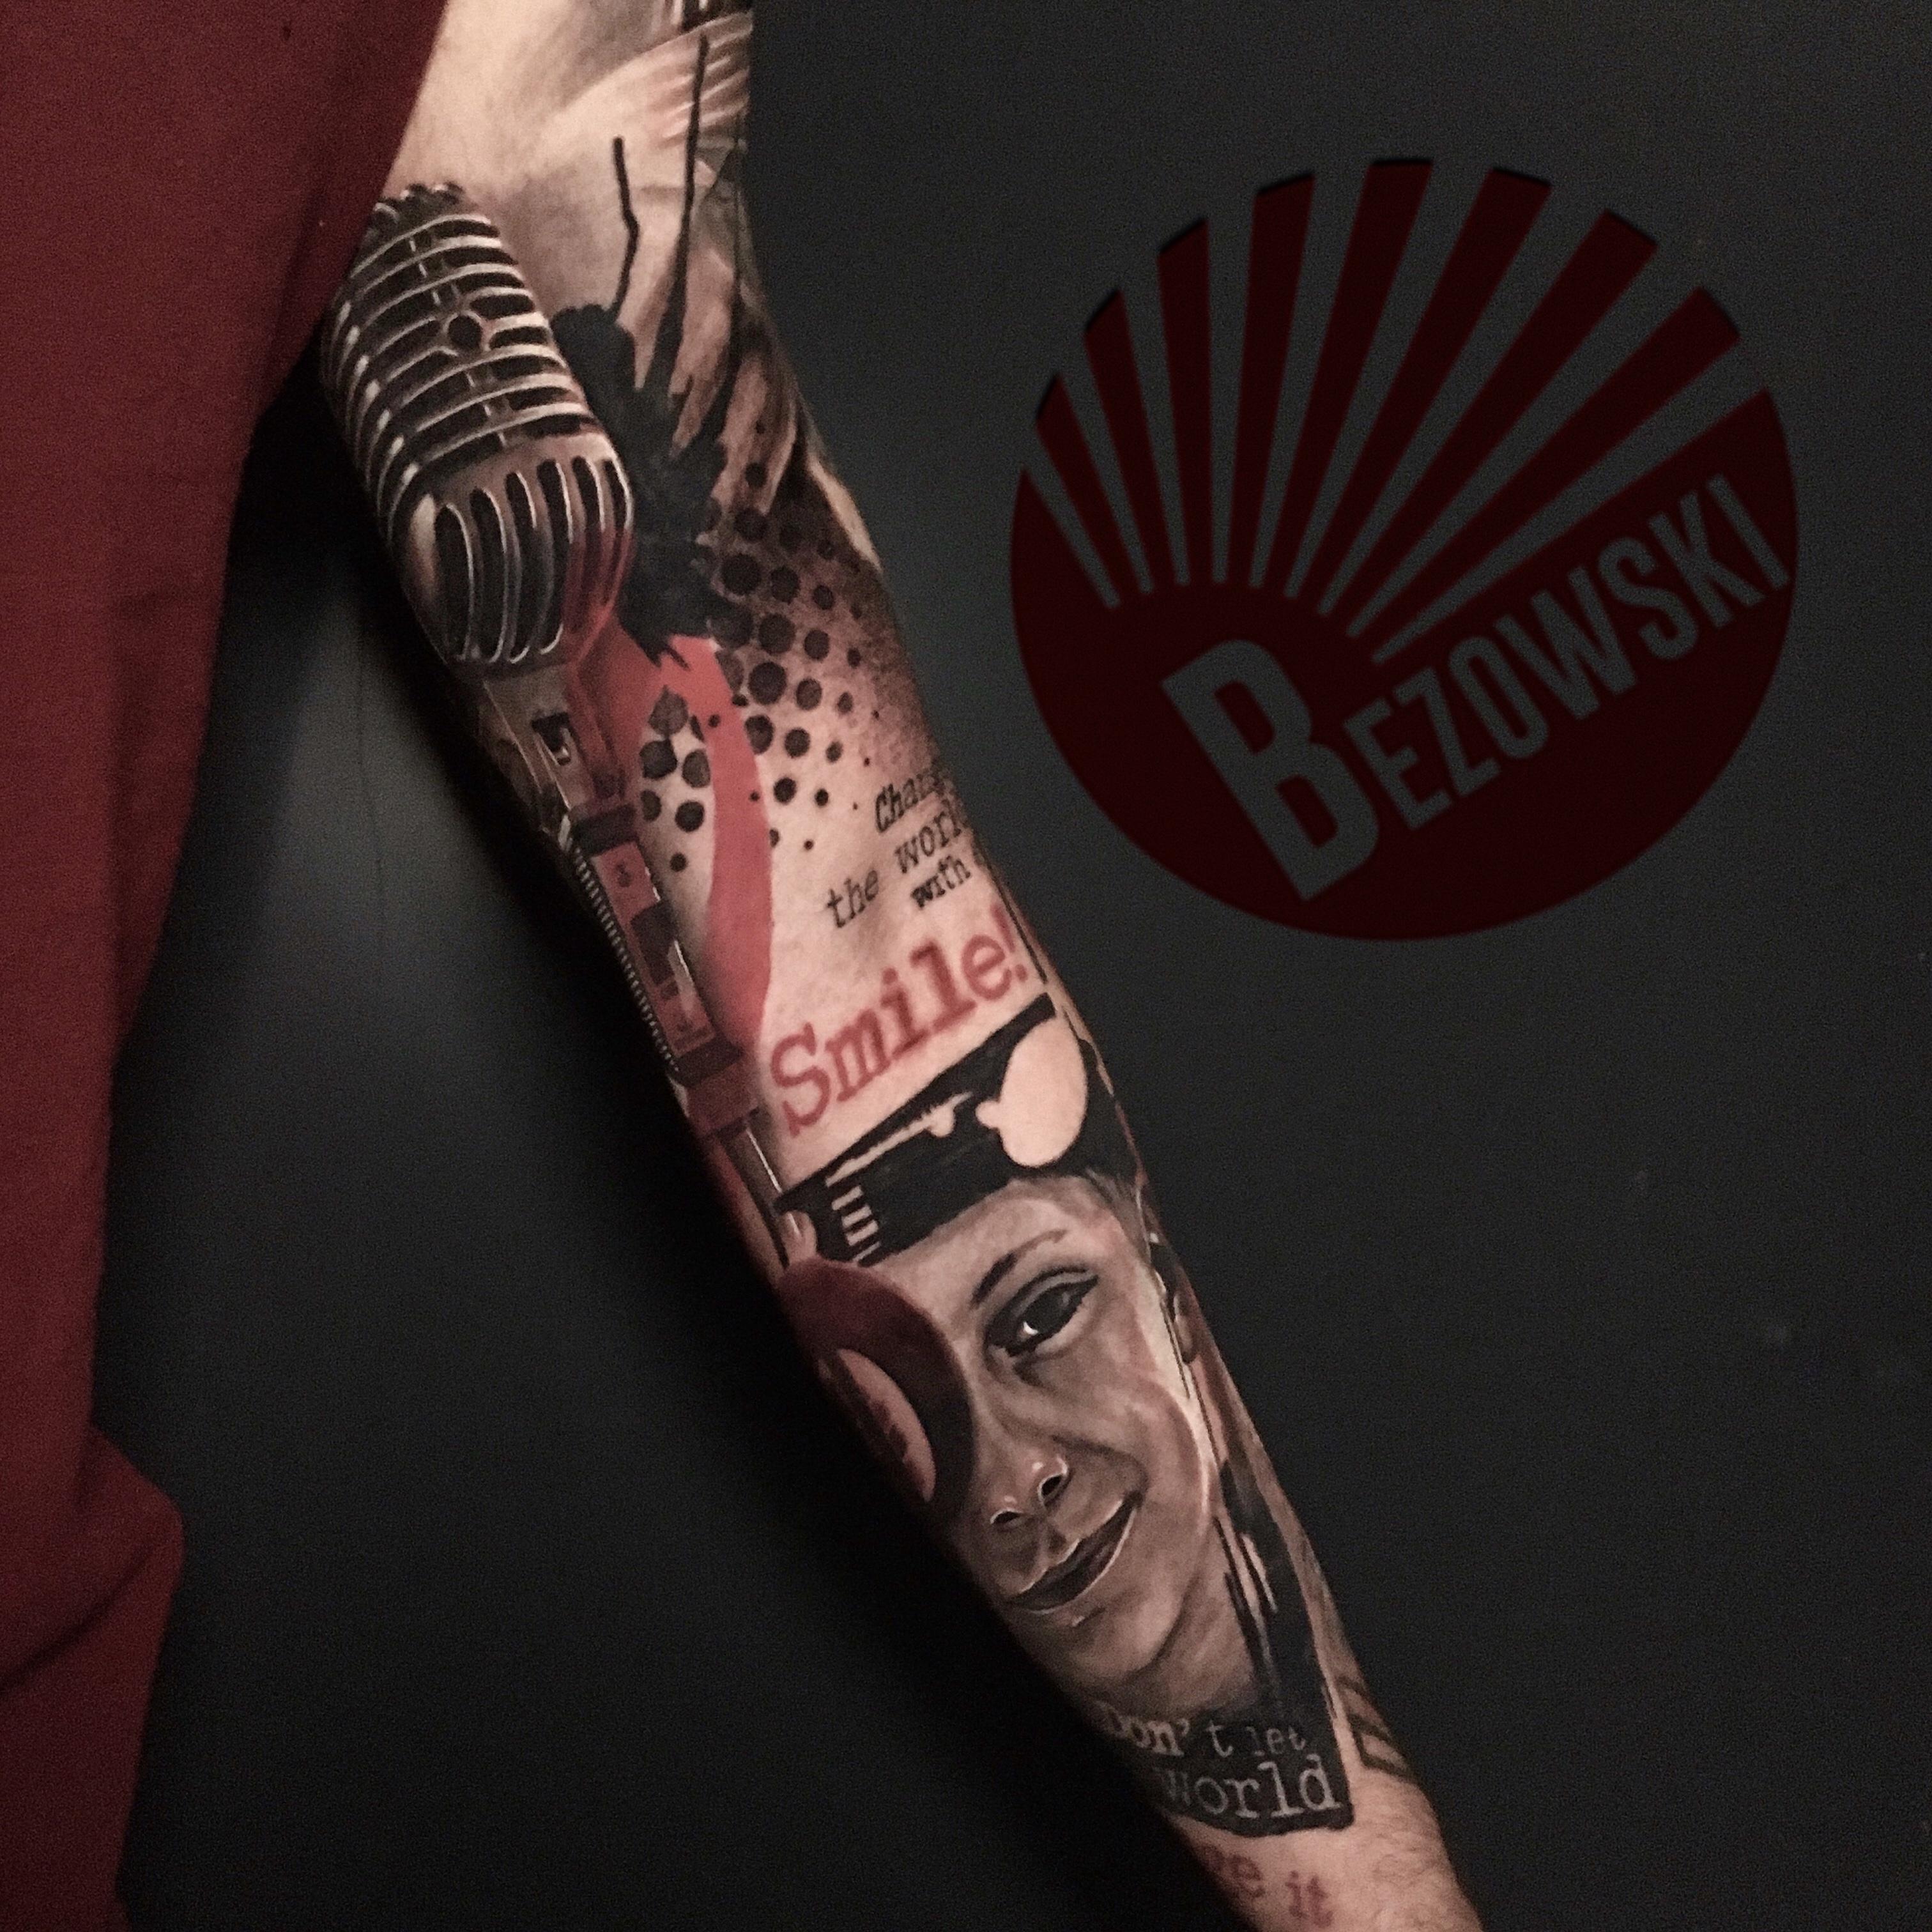 Inksearch tattoo Bezowski